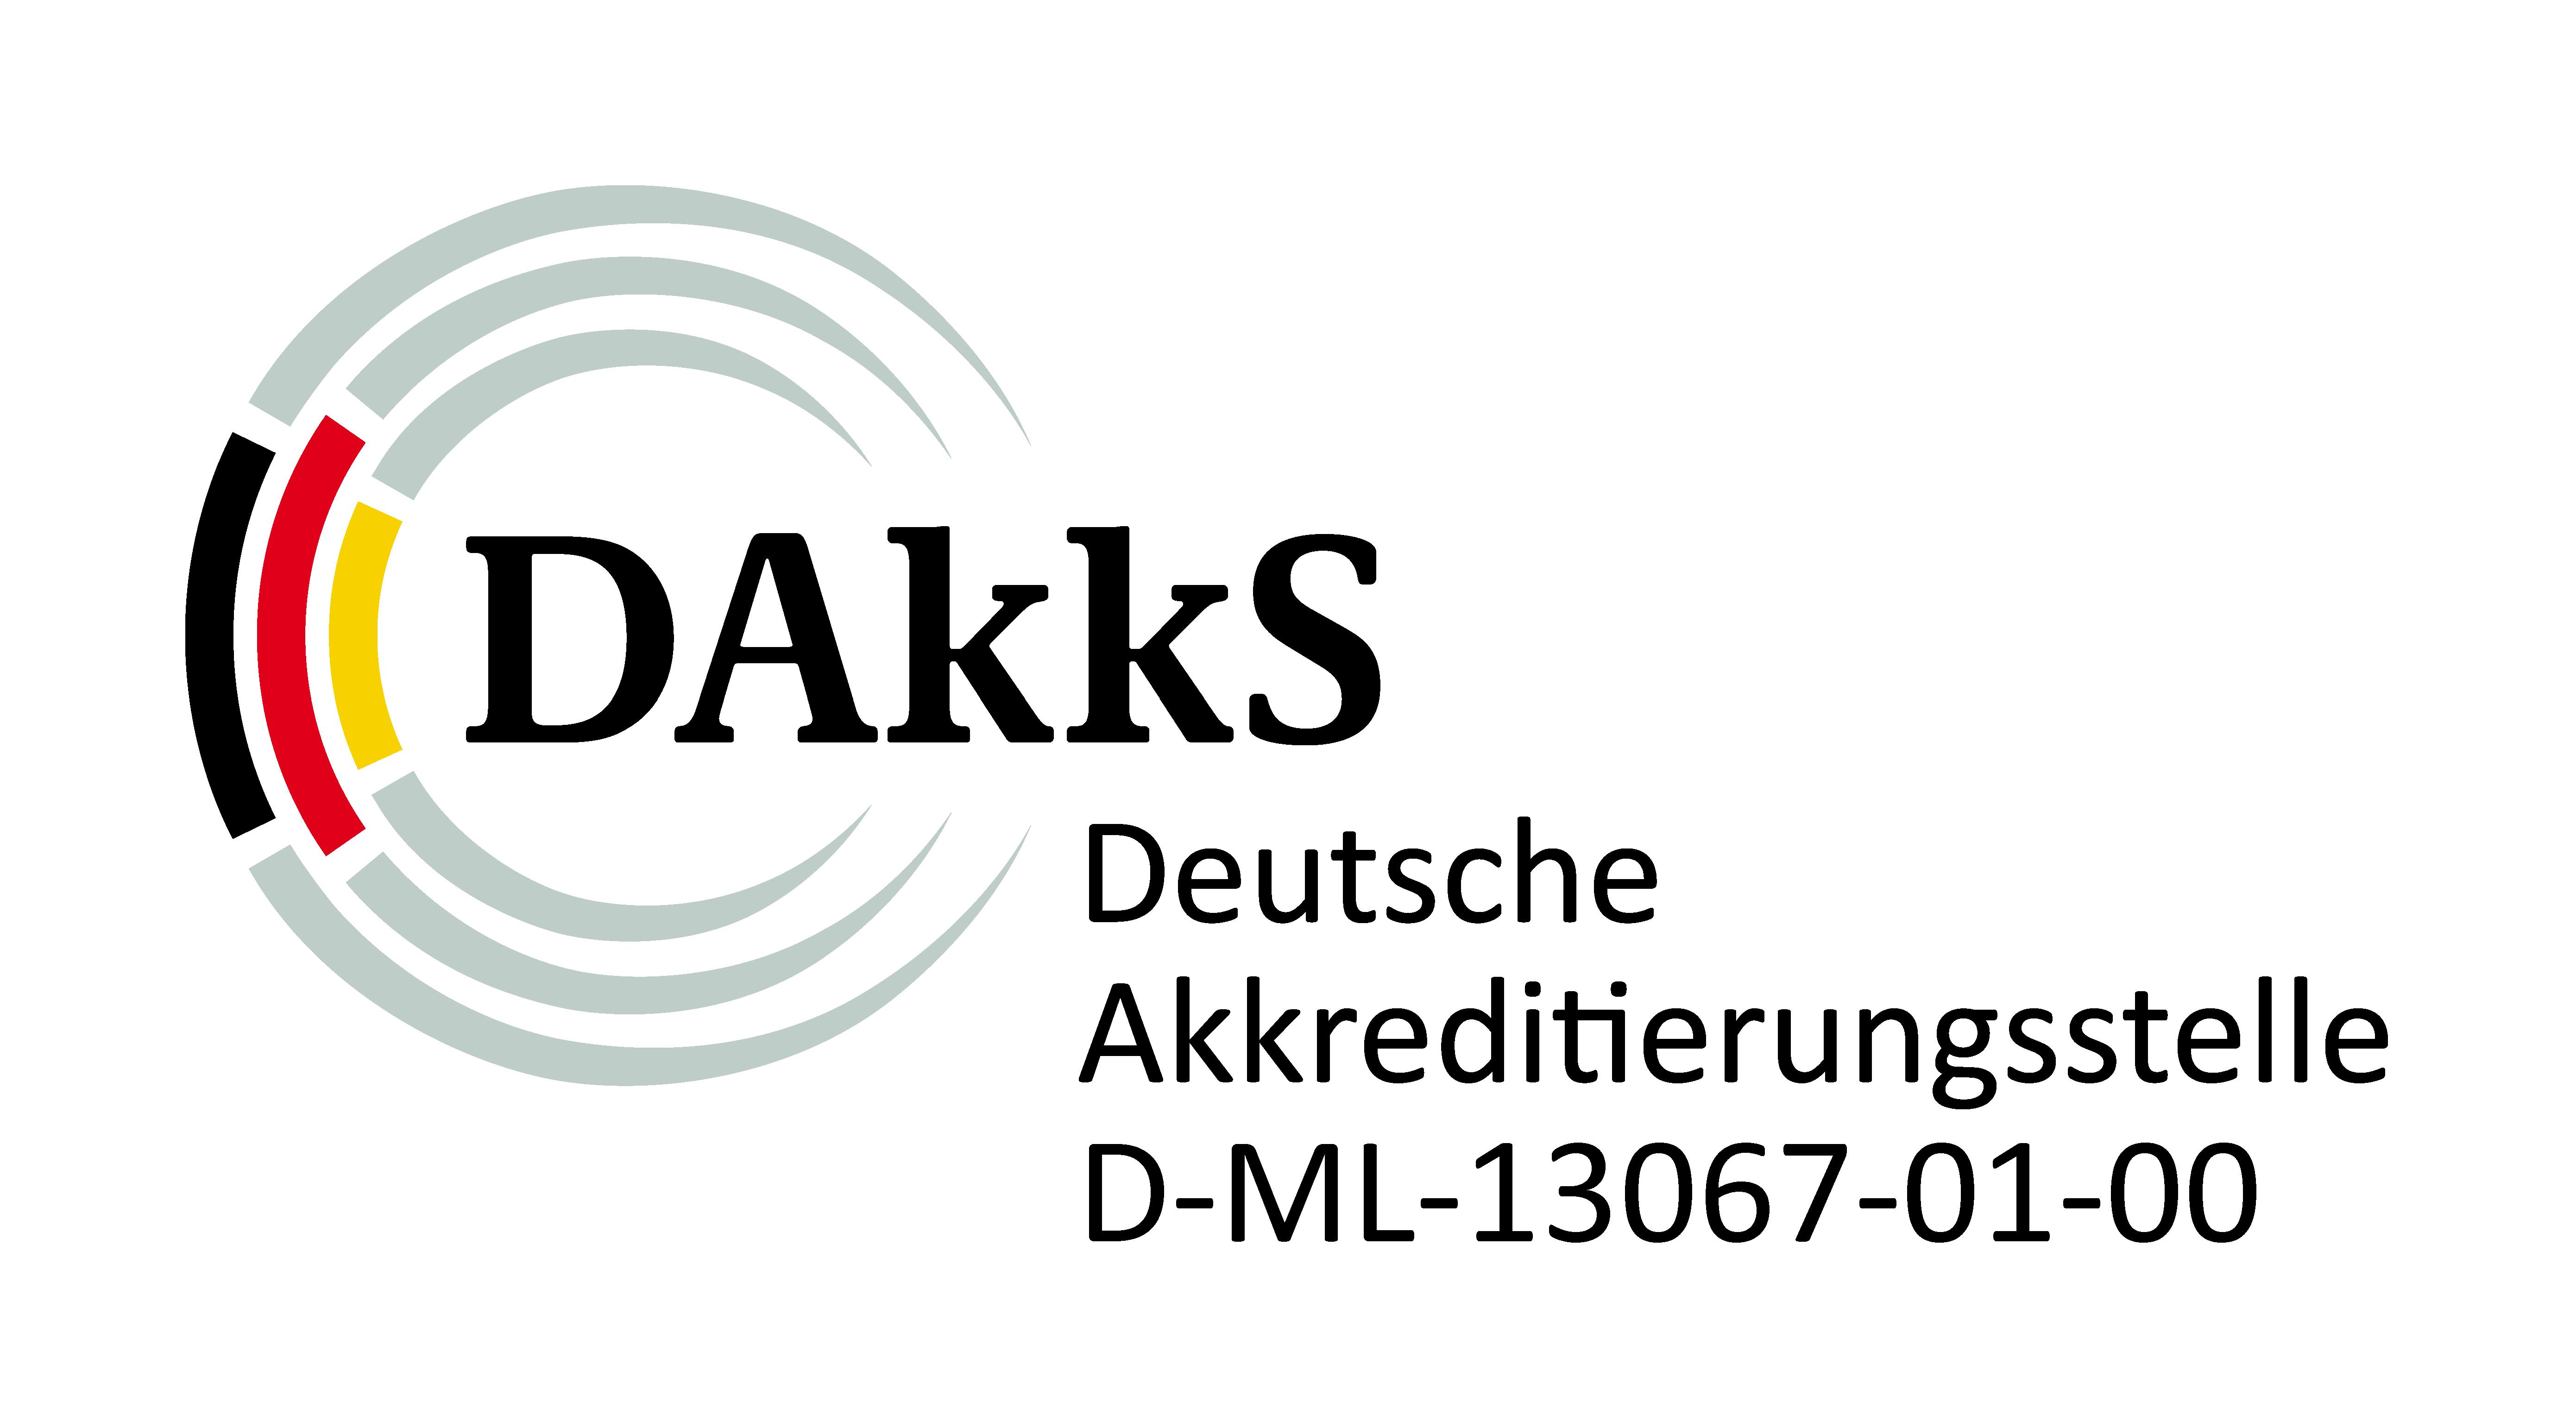 Medizinisches Infektiologiezentrum Berlin DAKKS Logo